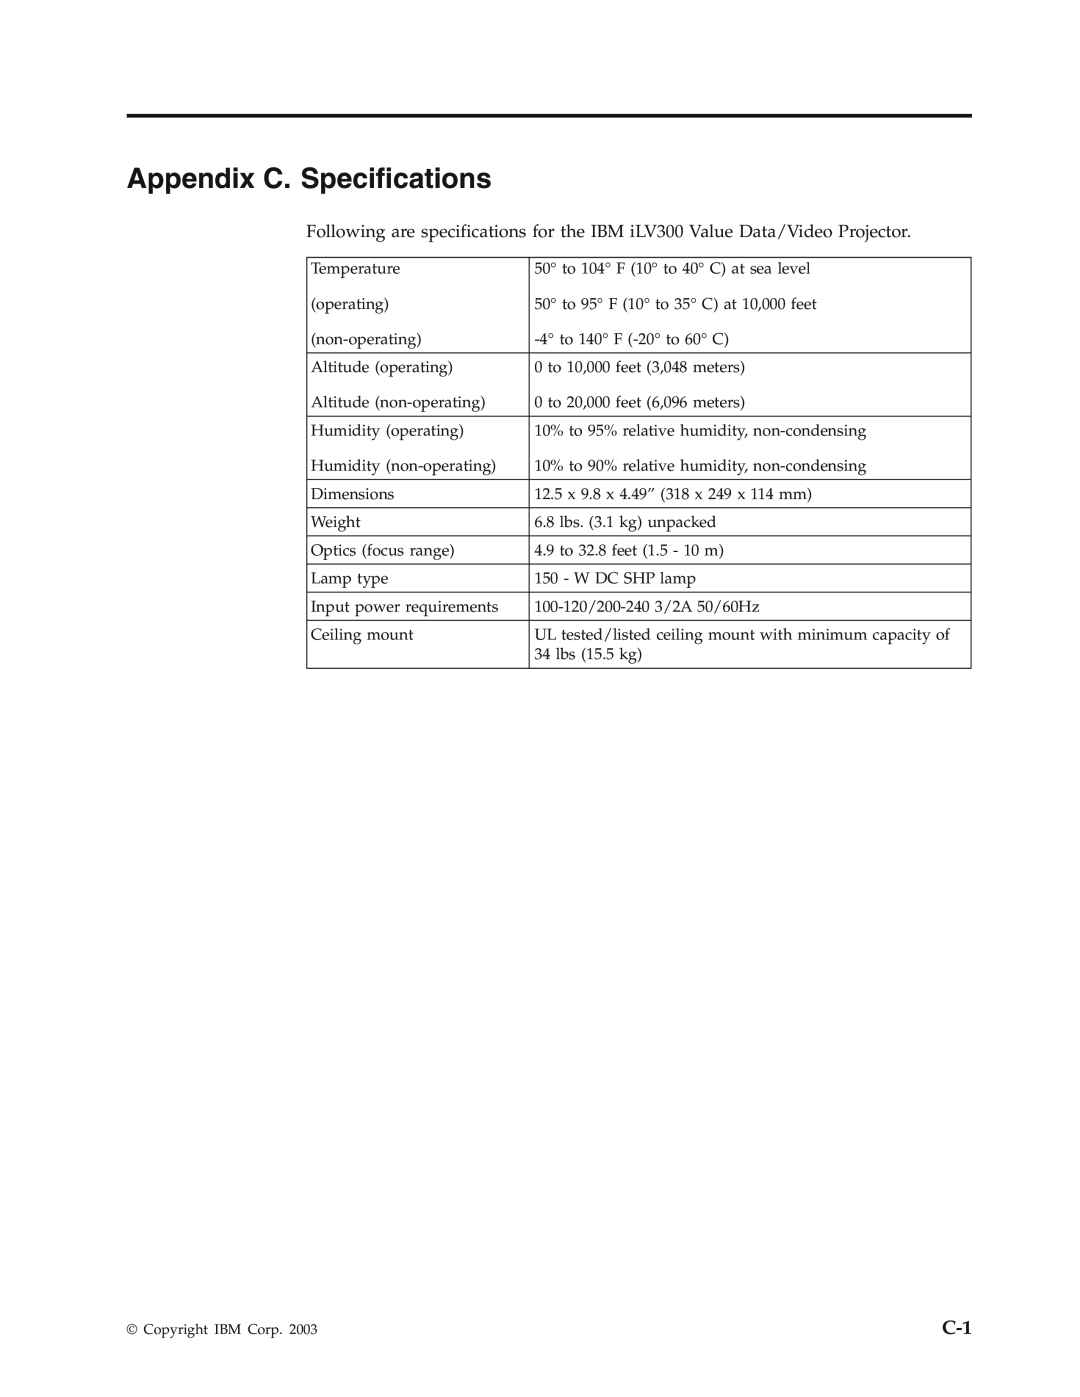 IBM Partner Pavilion iLV300 manual Appendix C. Specifications 